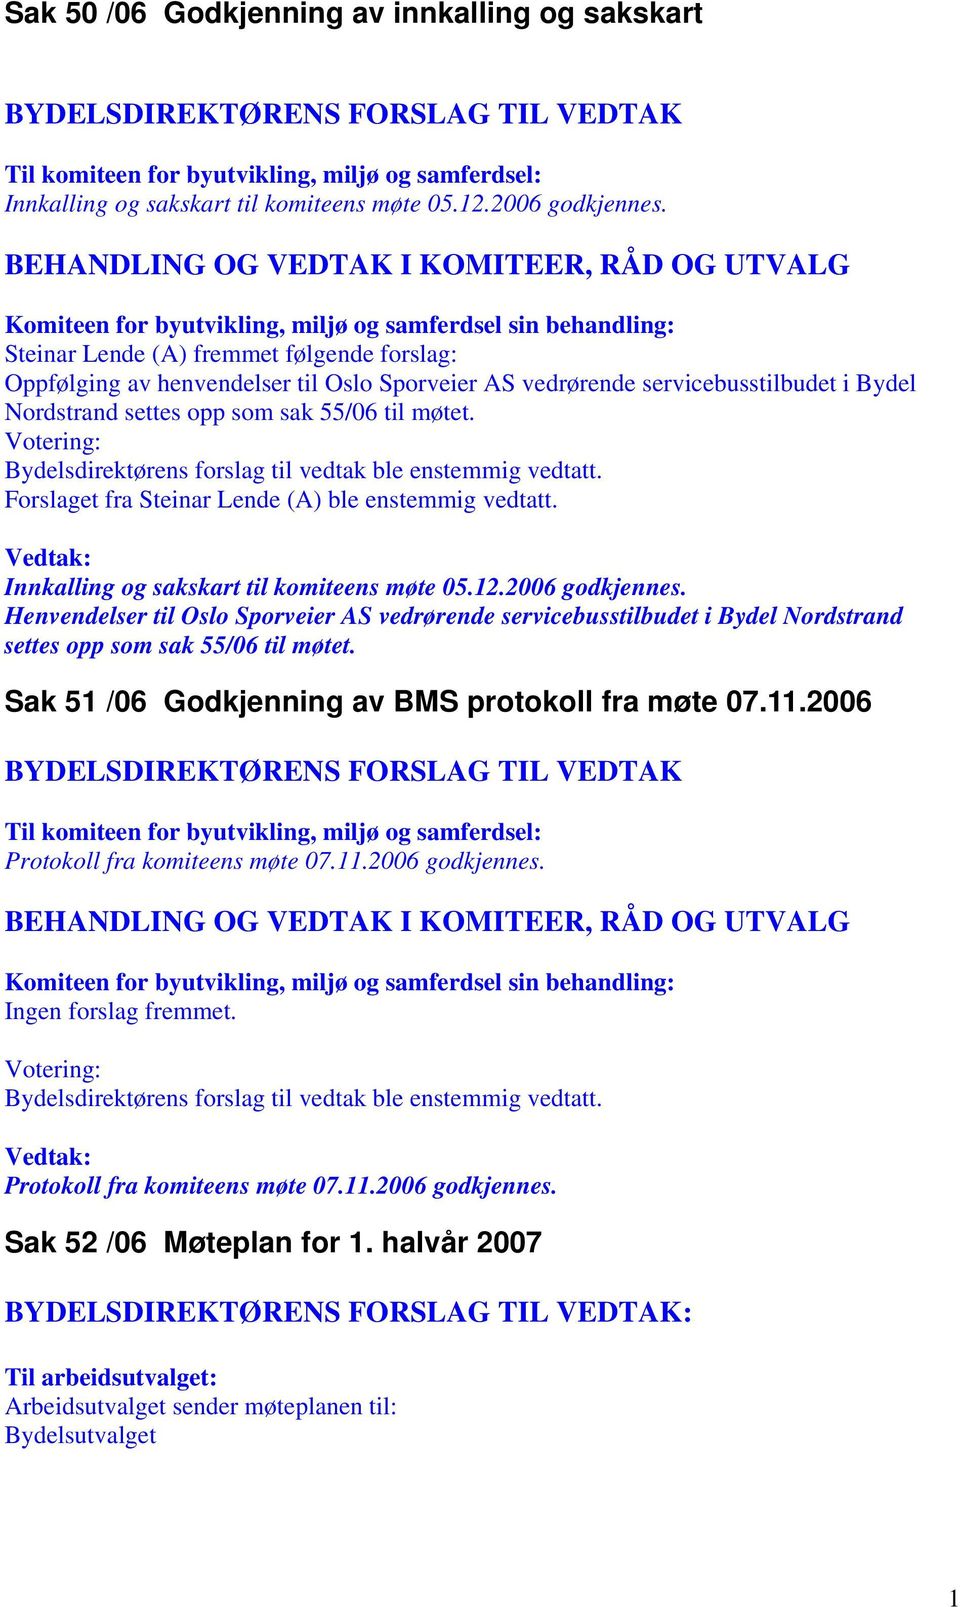 Votering: Bydelsdirektørens forslag til vedtak ble enstemmig vedtatt. Forslaget fra Steinar Lende (A) ble enstemmig vedtatt. Innkalling og sakskart til komiteens møte 05.12.2006 godkjennes.